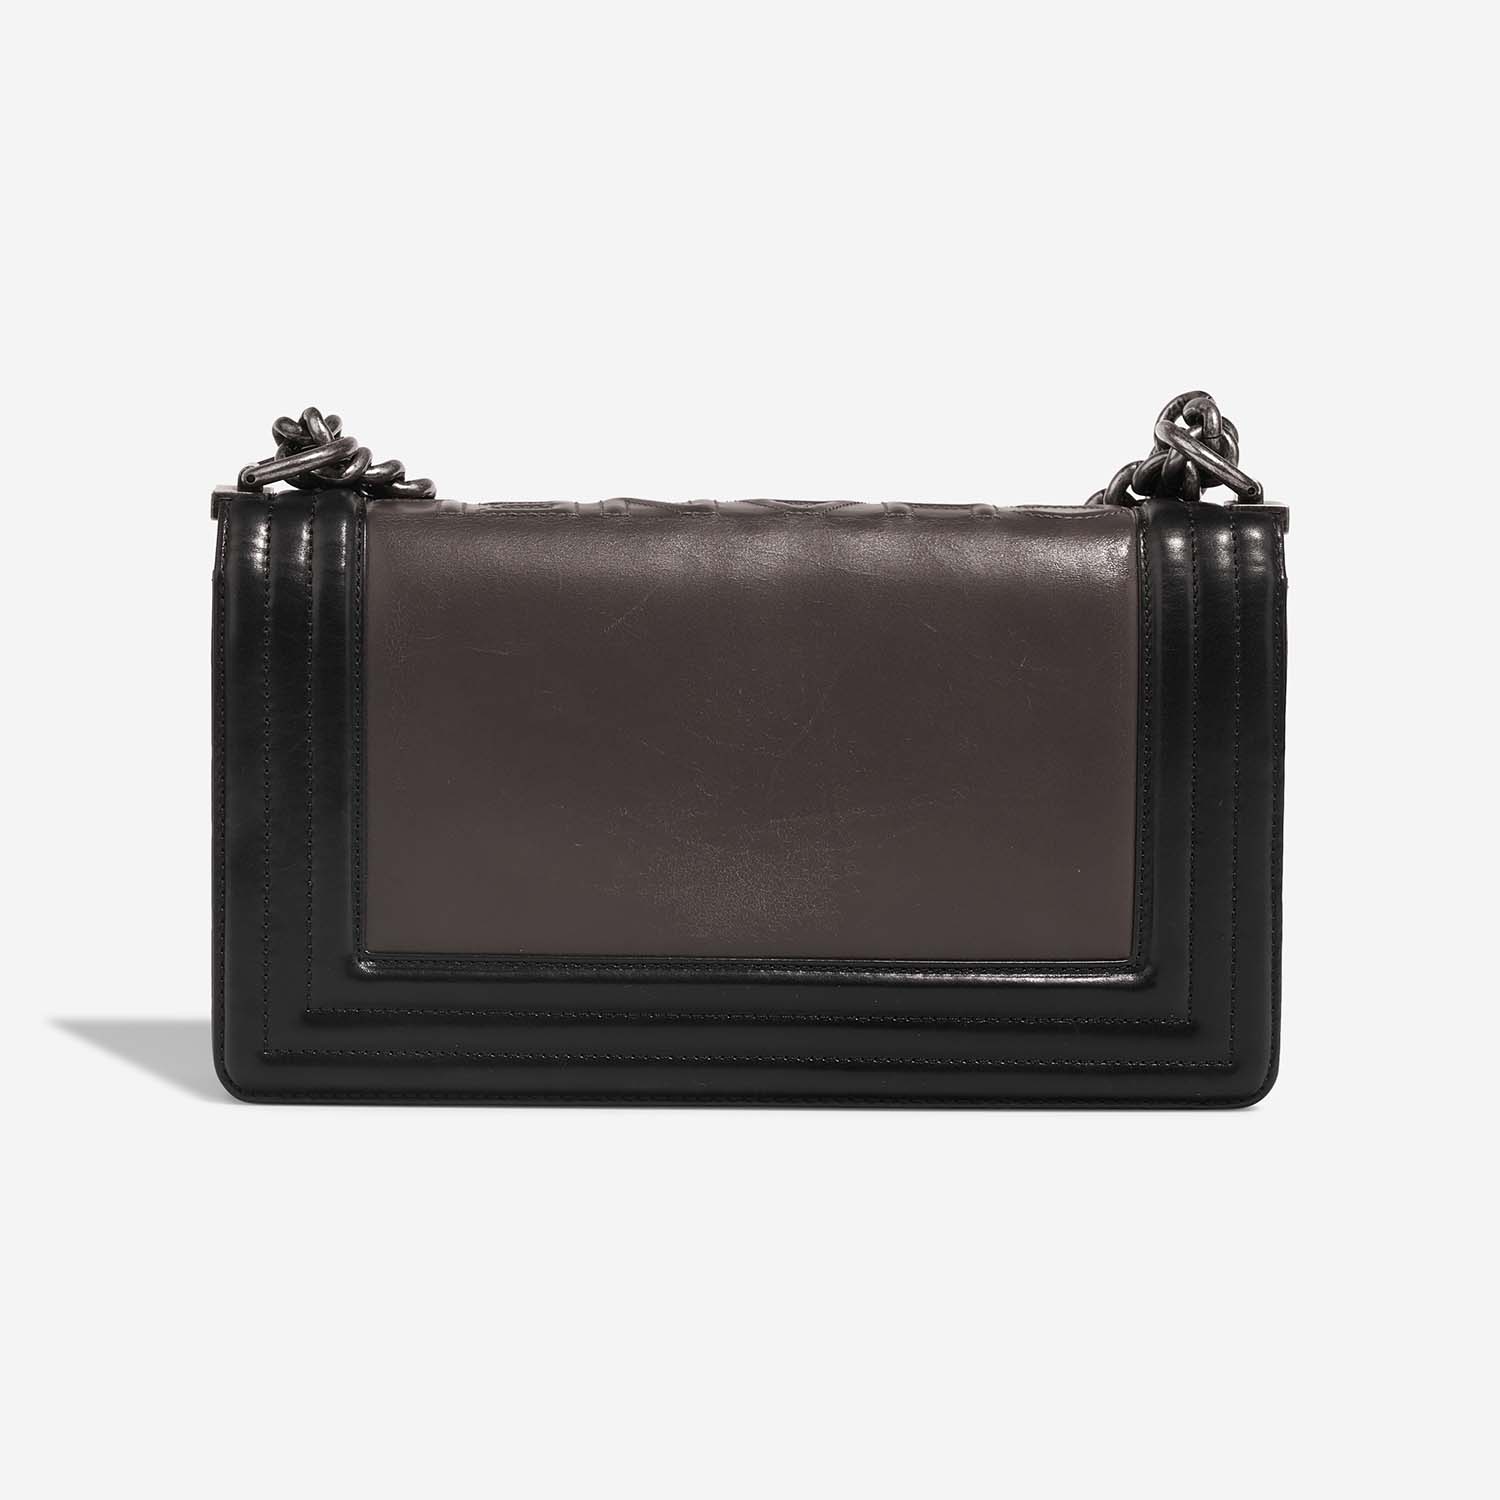 Chanel Boy OldMedium Black-Grey Back | Verkaufen Sie Ihre Designer-Tasche auf Saclab.com